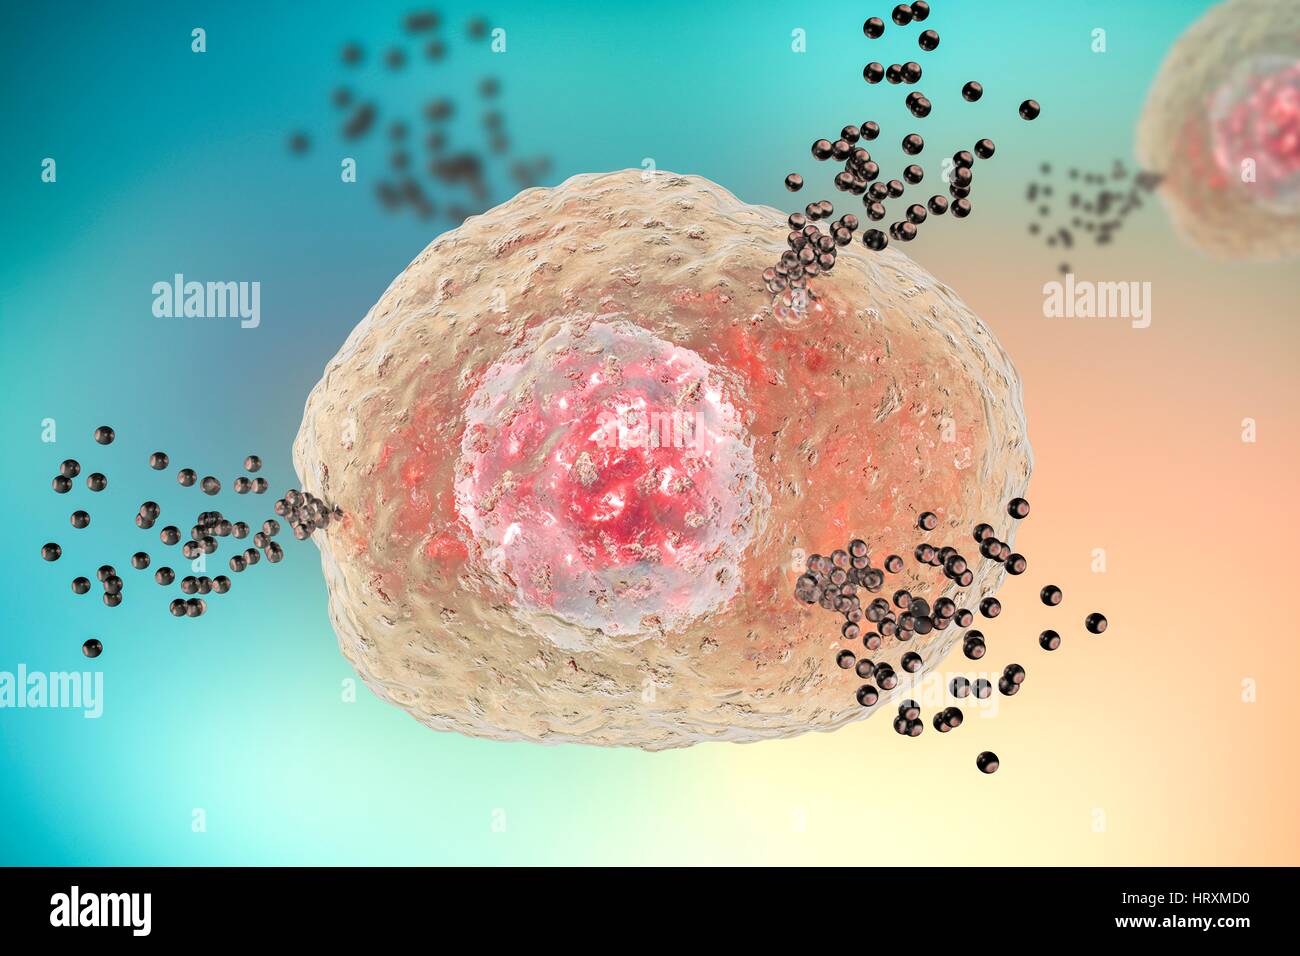 Mastzellen Histamin bei allergischen Reaktion, Computer Illustration die Freigabe. Mastzellen sind äußerst (weiße Blutzellen). Sie enthalten chemische Mediatoren Histamin, Serotonin Heparin. Histamin wird von Mastzellen in Reaktion auf Allergen verursacht lokalisierte entzündlichen immunen befreit. Stockfoto